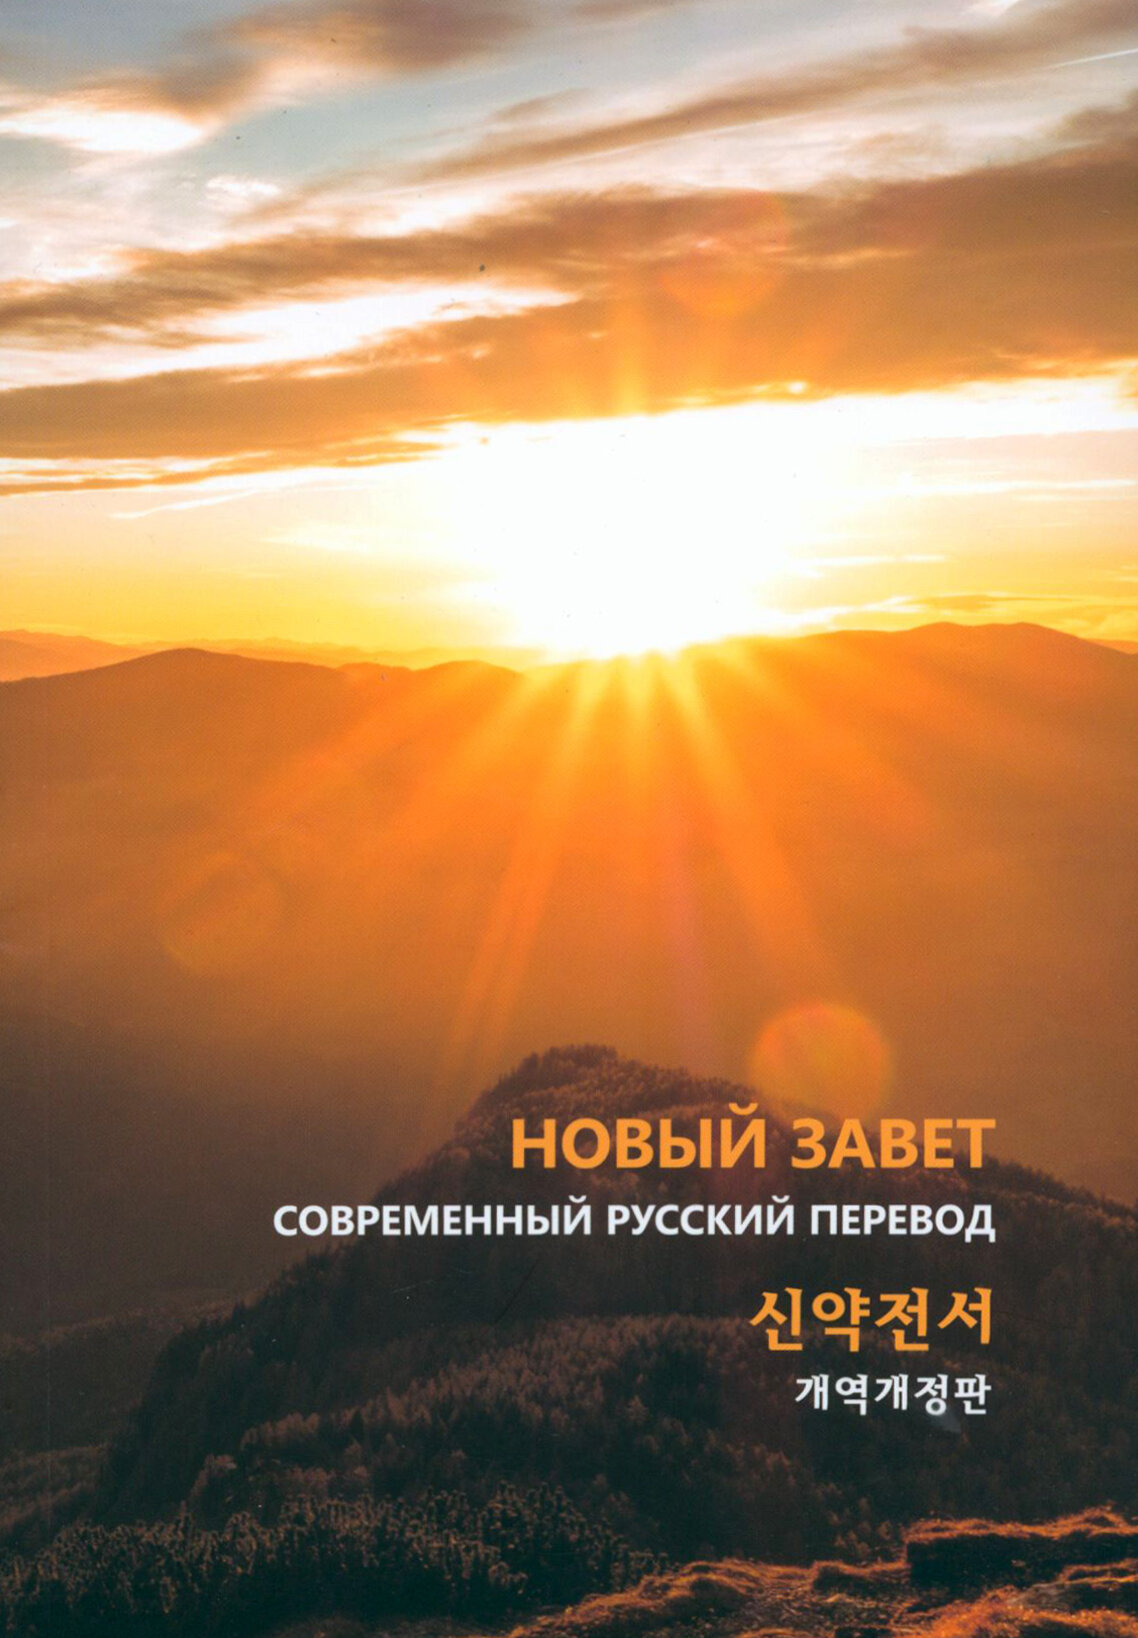 Новый завет на русском и корейском языках - фото №1